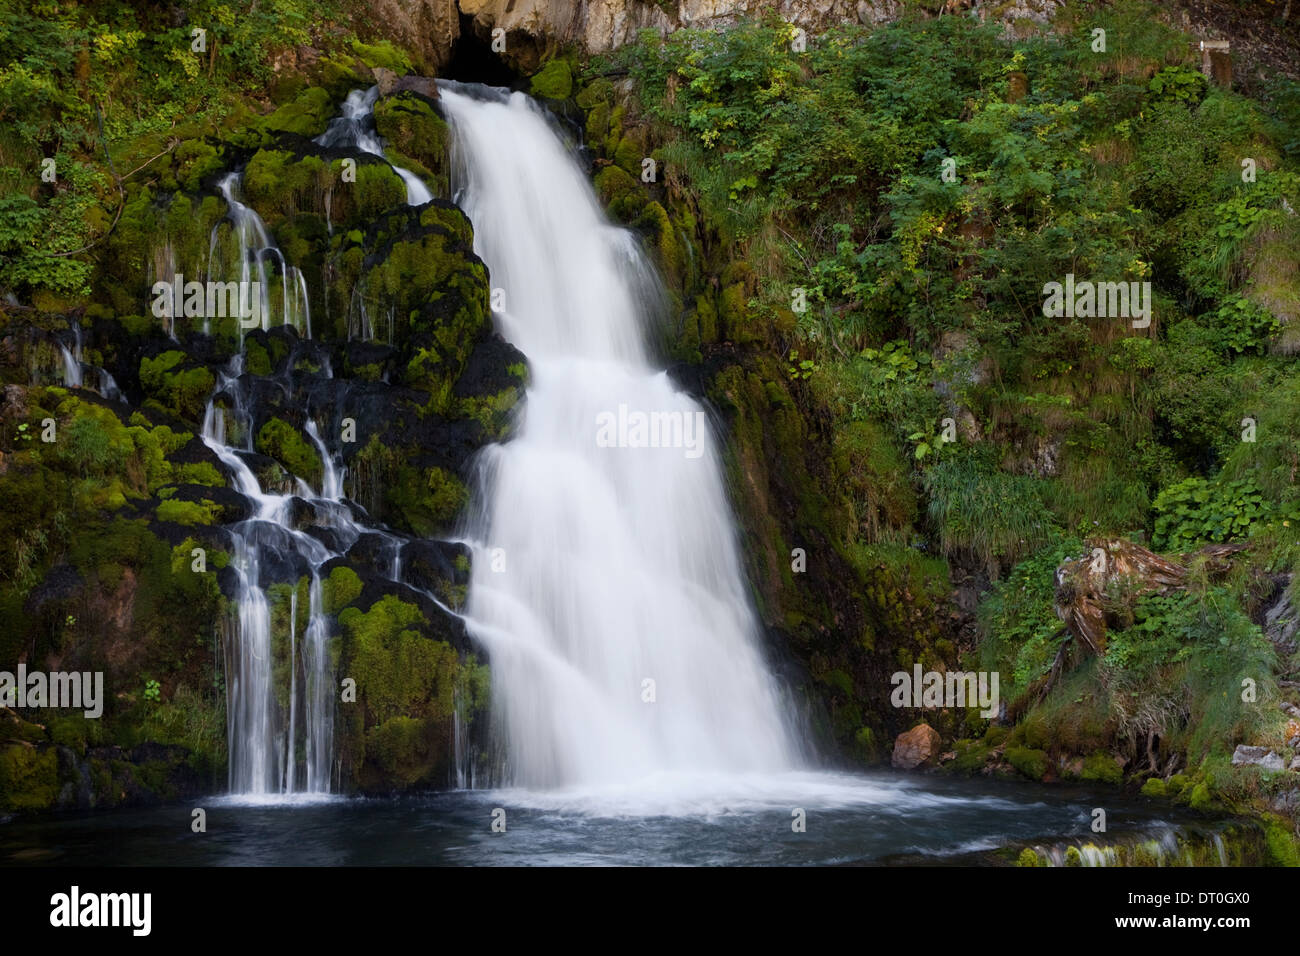 Waterfall of Jaun, Gruyere, Switzerland. Stock Photo